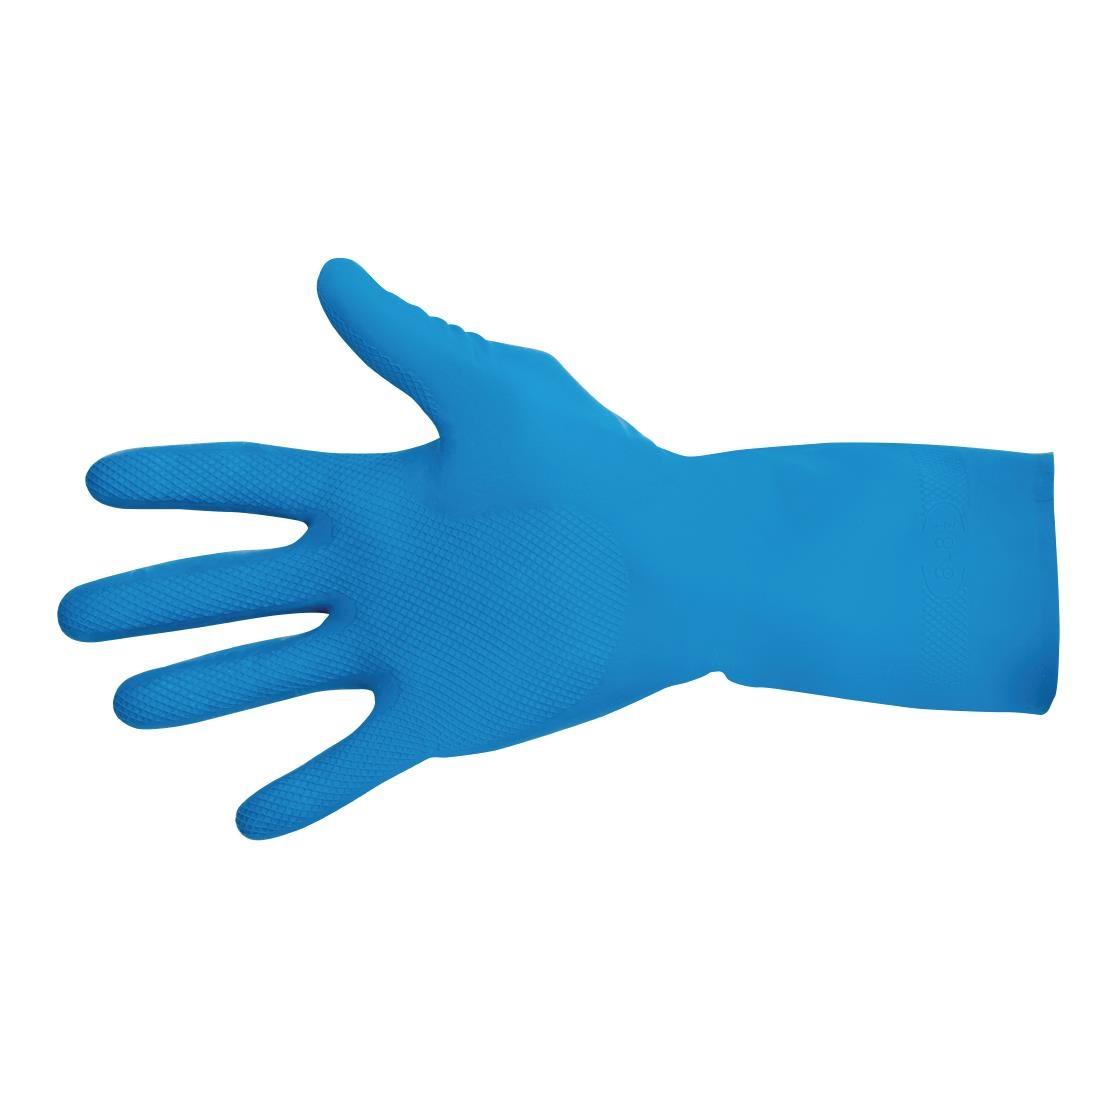 MAPA Vital 165 Liquid-Proof Food Handling Gloves Blue Large (One Pair) - FA293-L  - 1